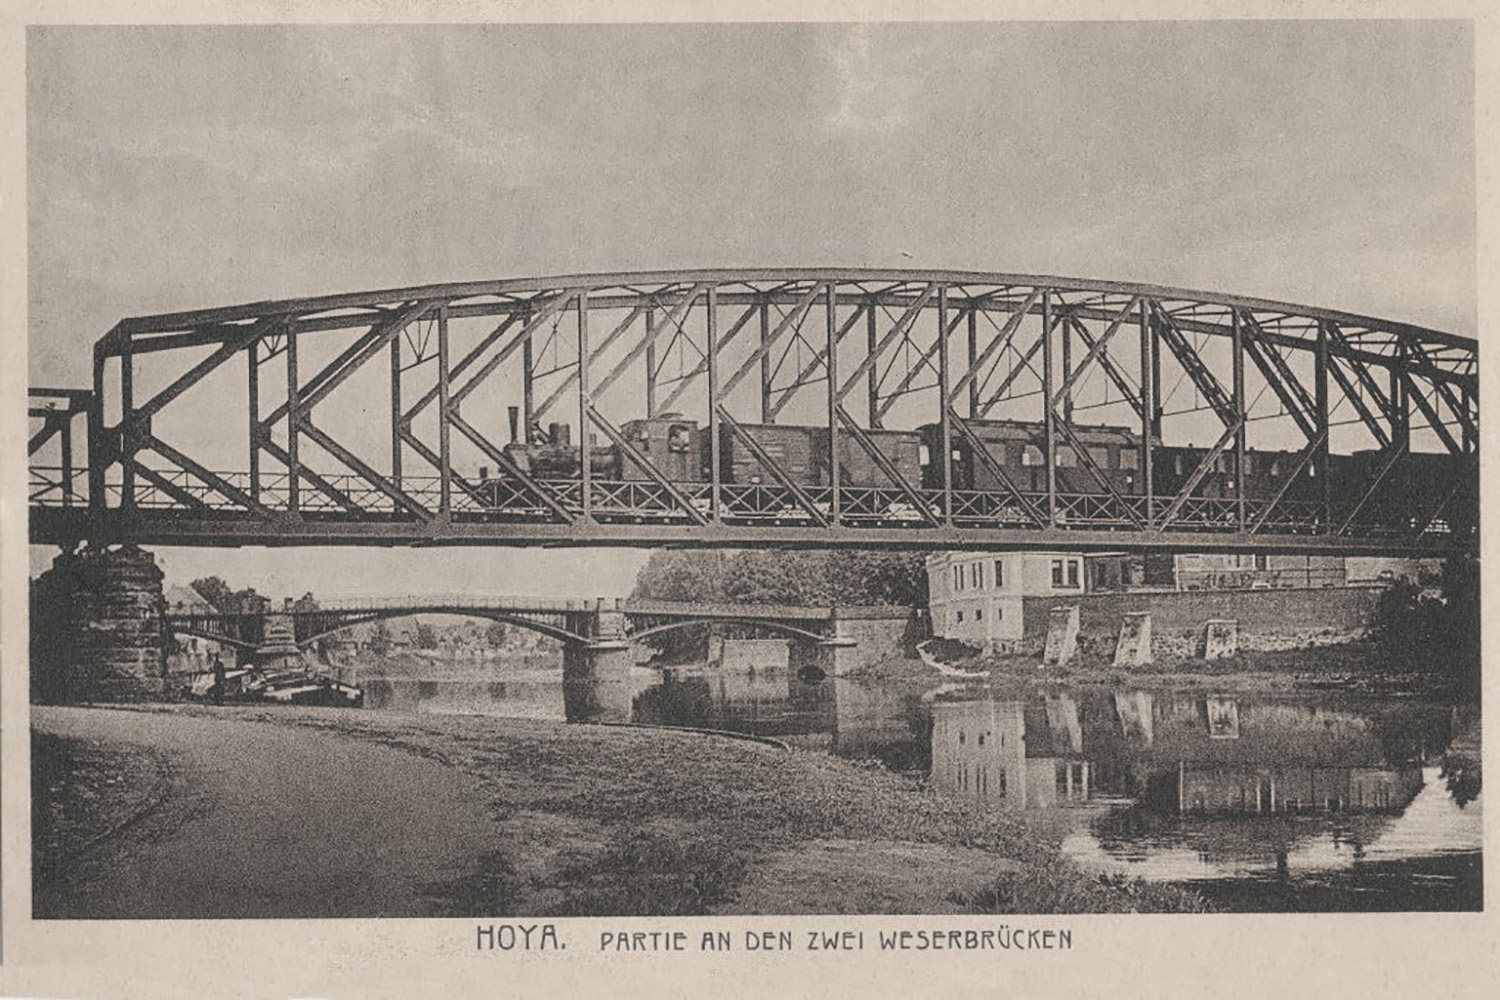 Am Morgen des 07. April 1945 wurden die Straßen- und Eisenbahnbrücke über die Weser in Hoya von deutschen Soldaten gesprengt. 